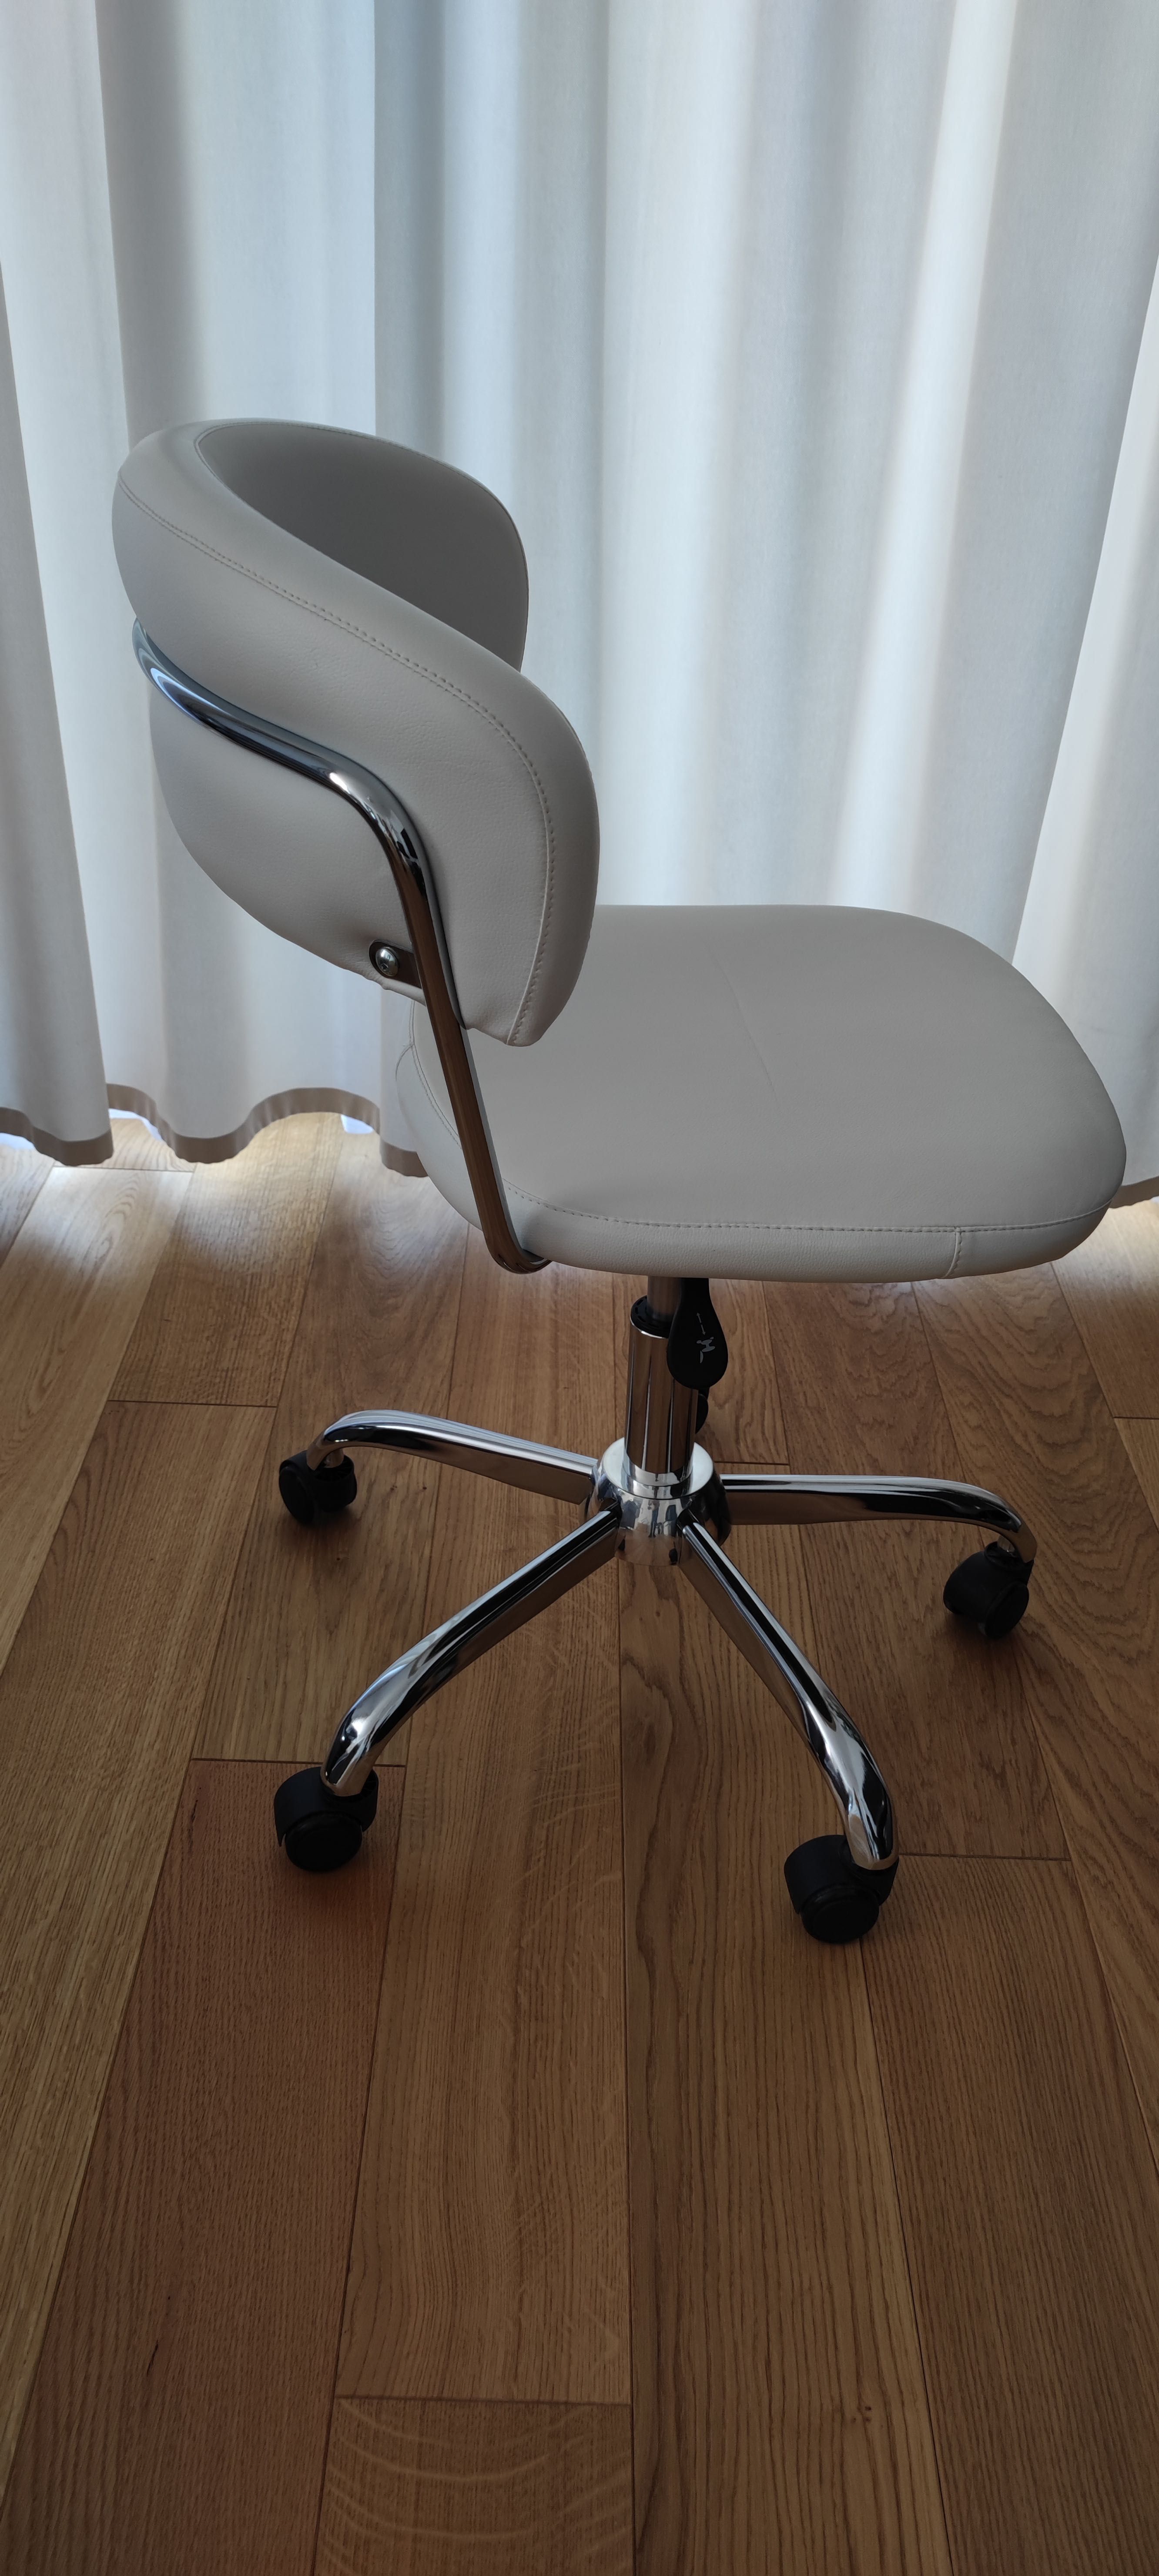 Krzesło biurowe SNEDSTED białe - odbiór osobisty